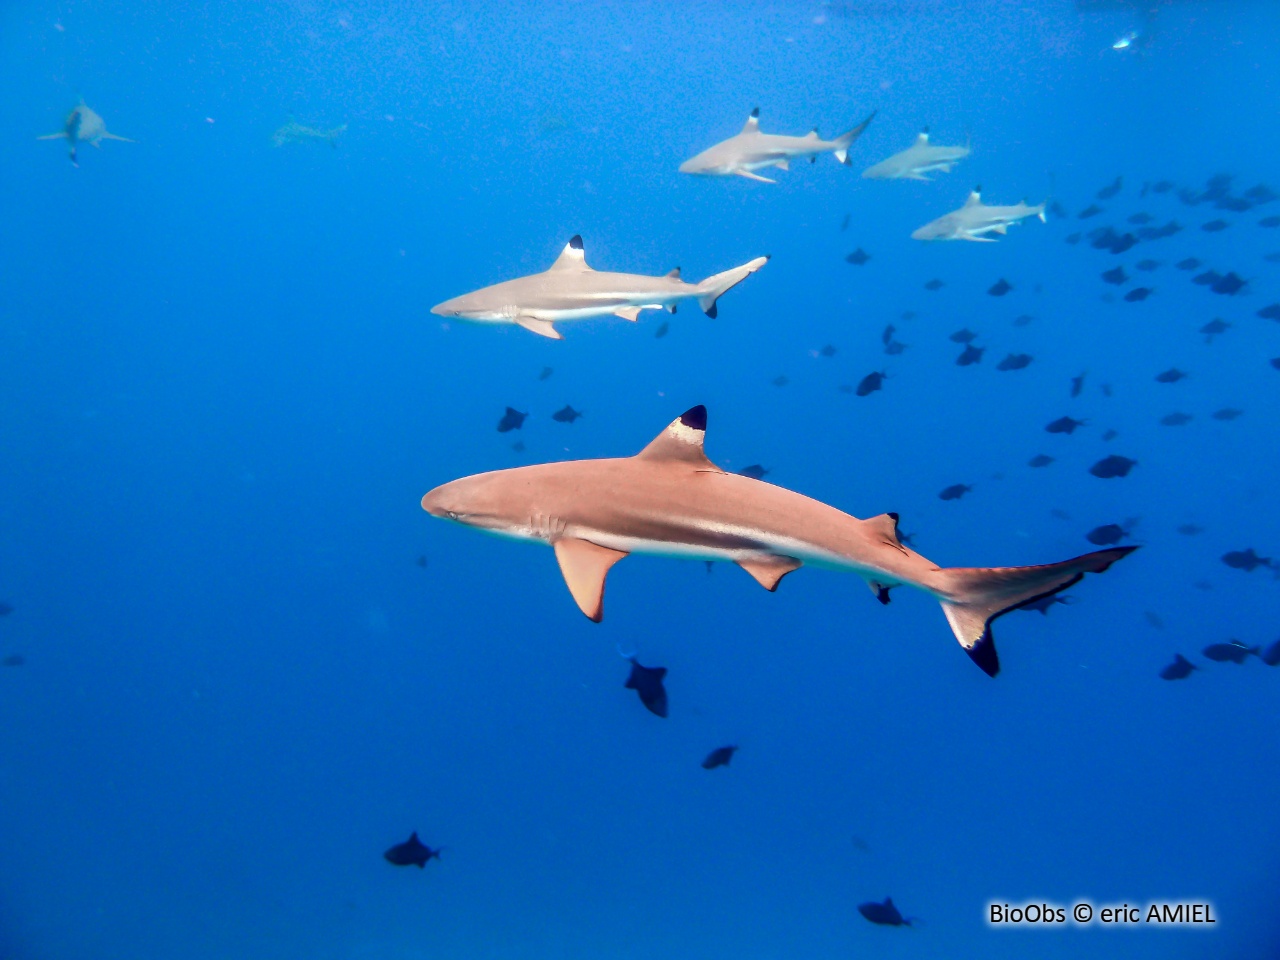 Requin à pointes noires - Carcharhinus melanopterus - eric AMIEL - BioObs